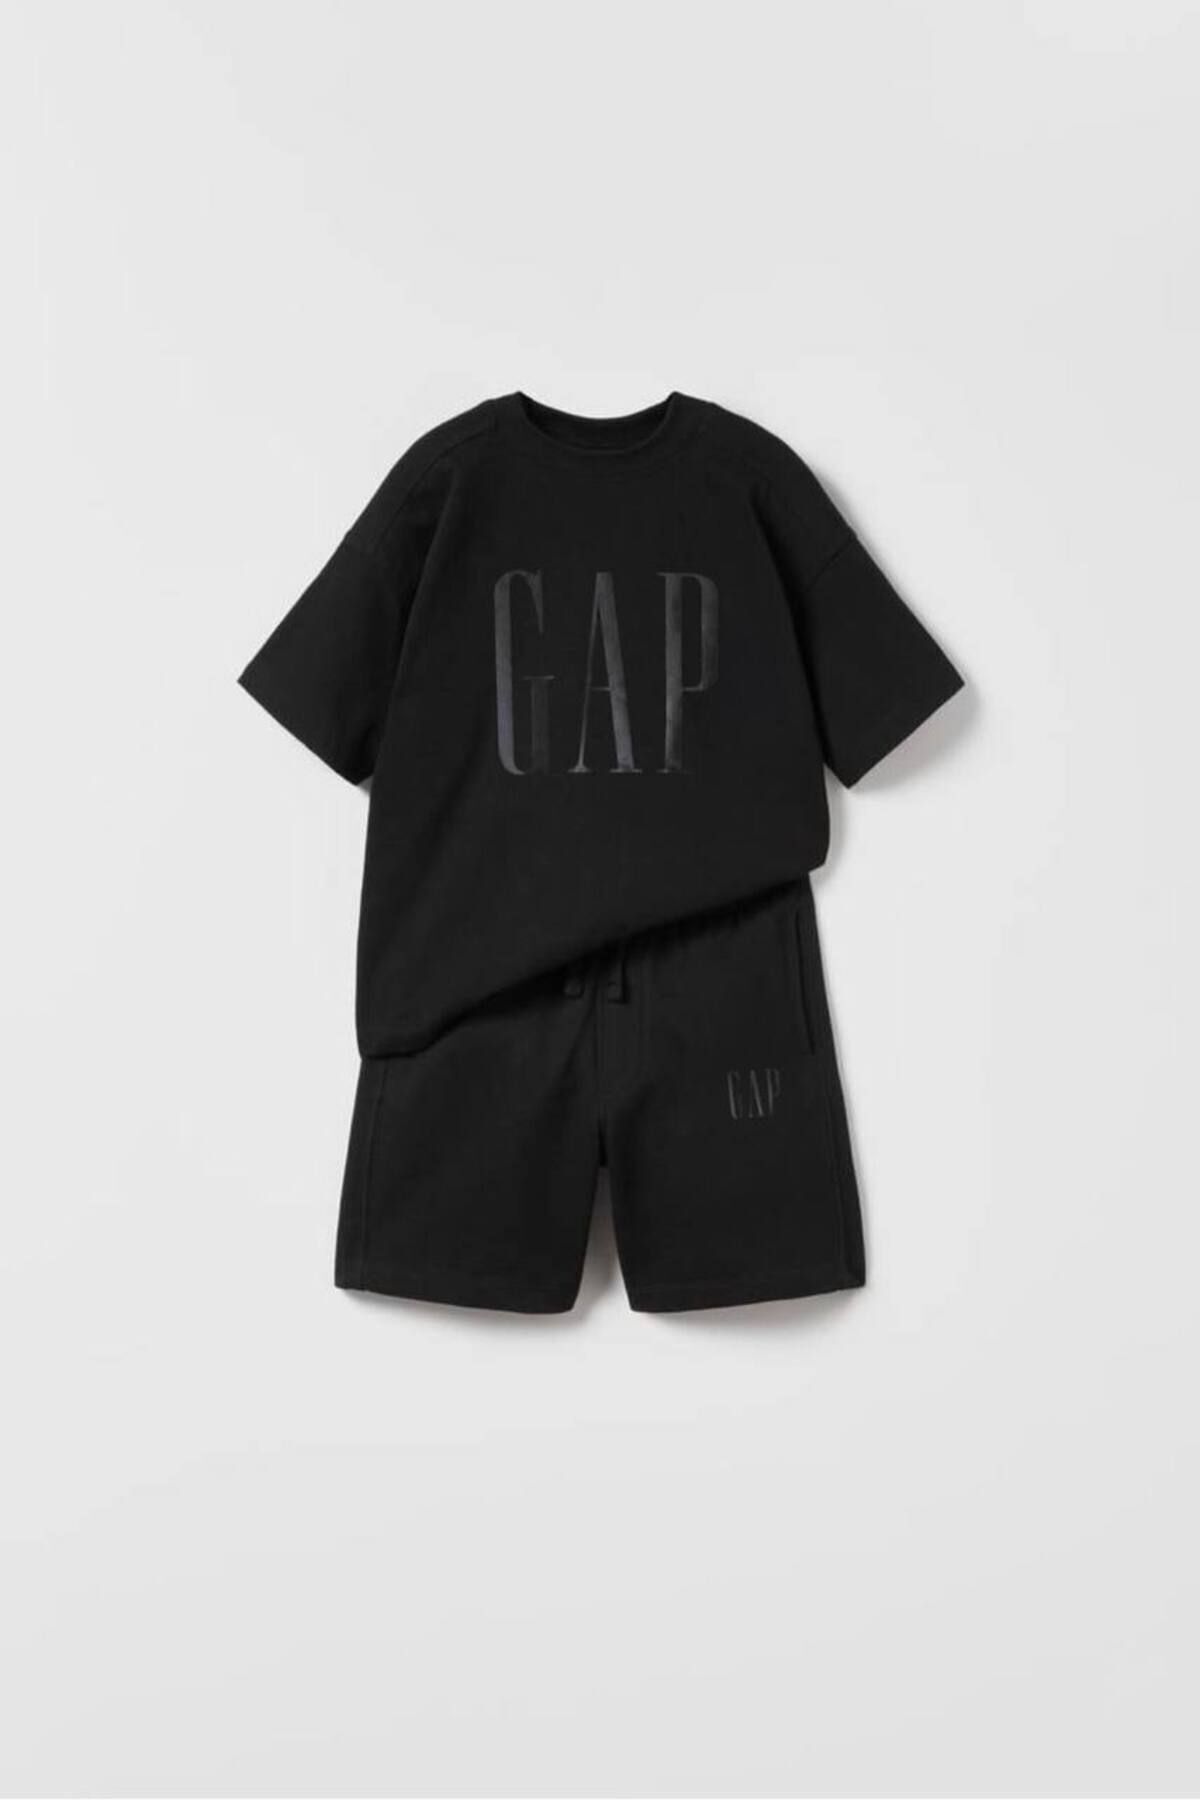 GAP Erkek Çocuk Yazlık Takım / Gap Baby Çocuk Yazlık Takım / Gap Baby Premium Kalite Şortlu Çocuk Takım